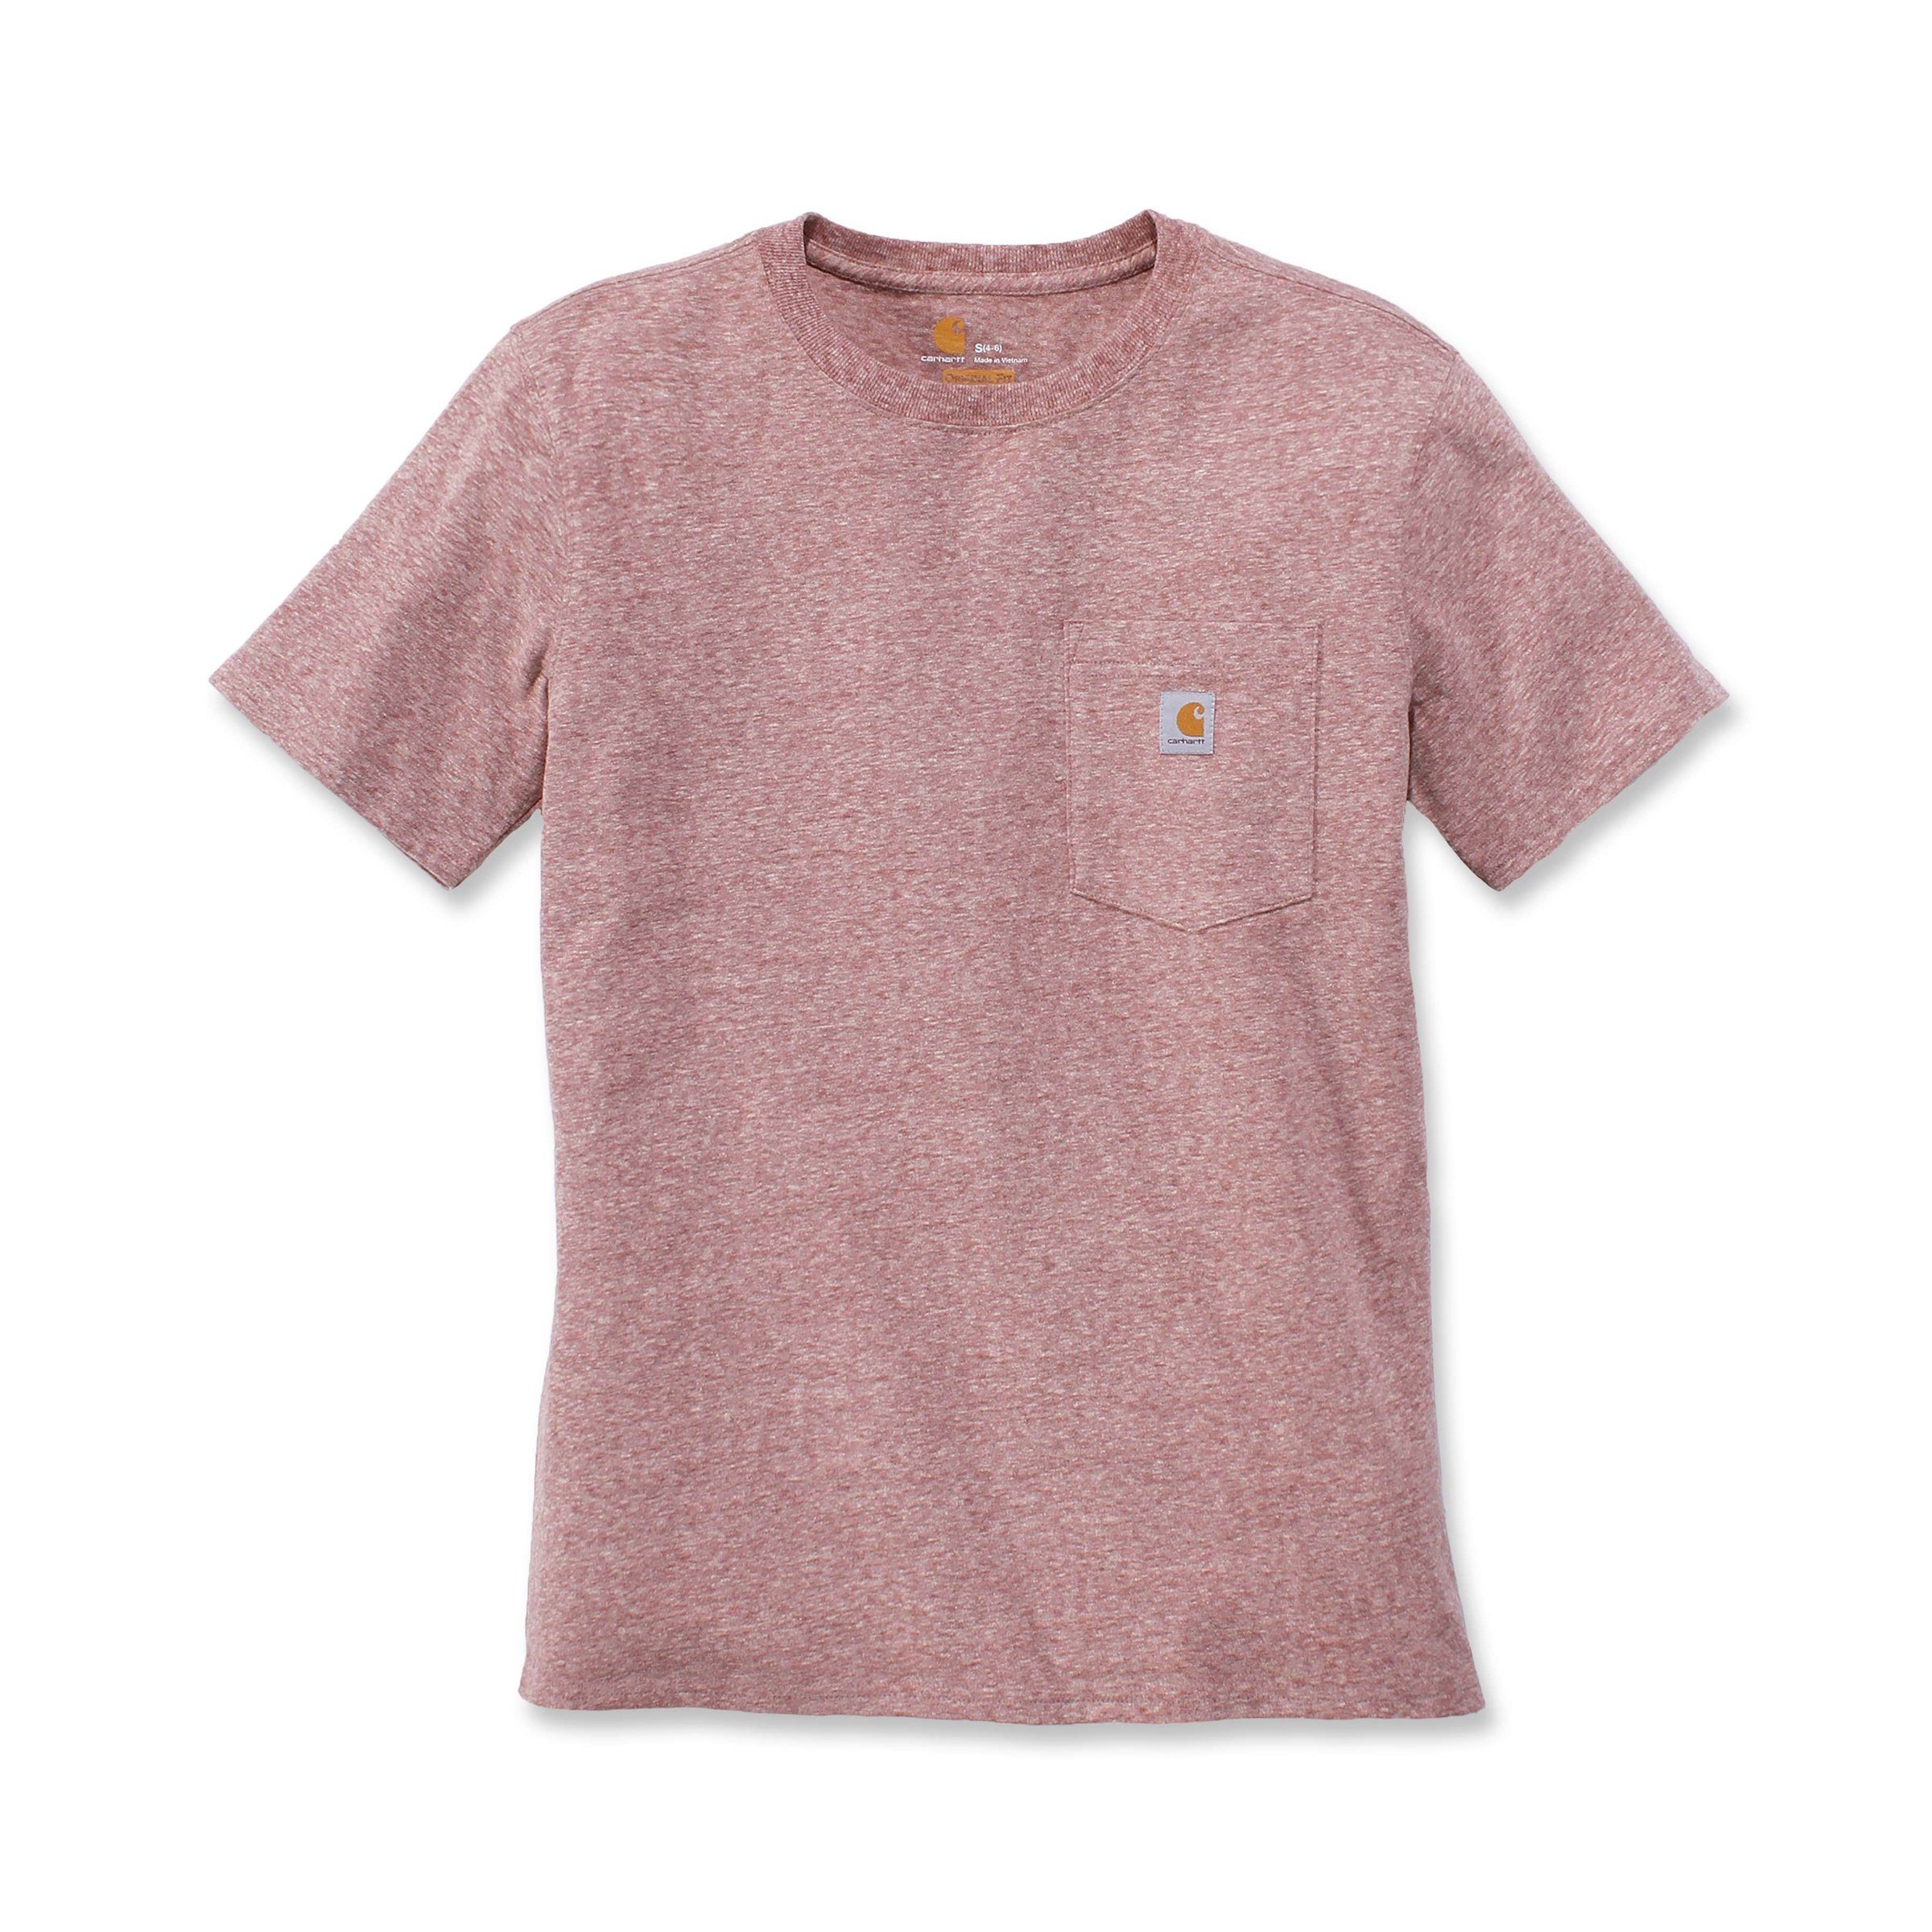 Carhartt T-Shirt Damen Fit Carhartt heather hibiscus Short-Sleeve Loose Adult T-Shirt Pocket Heavyweight